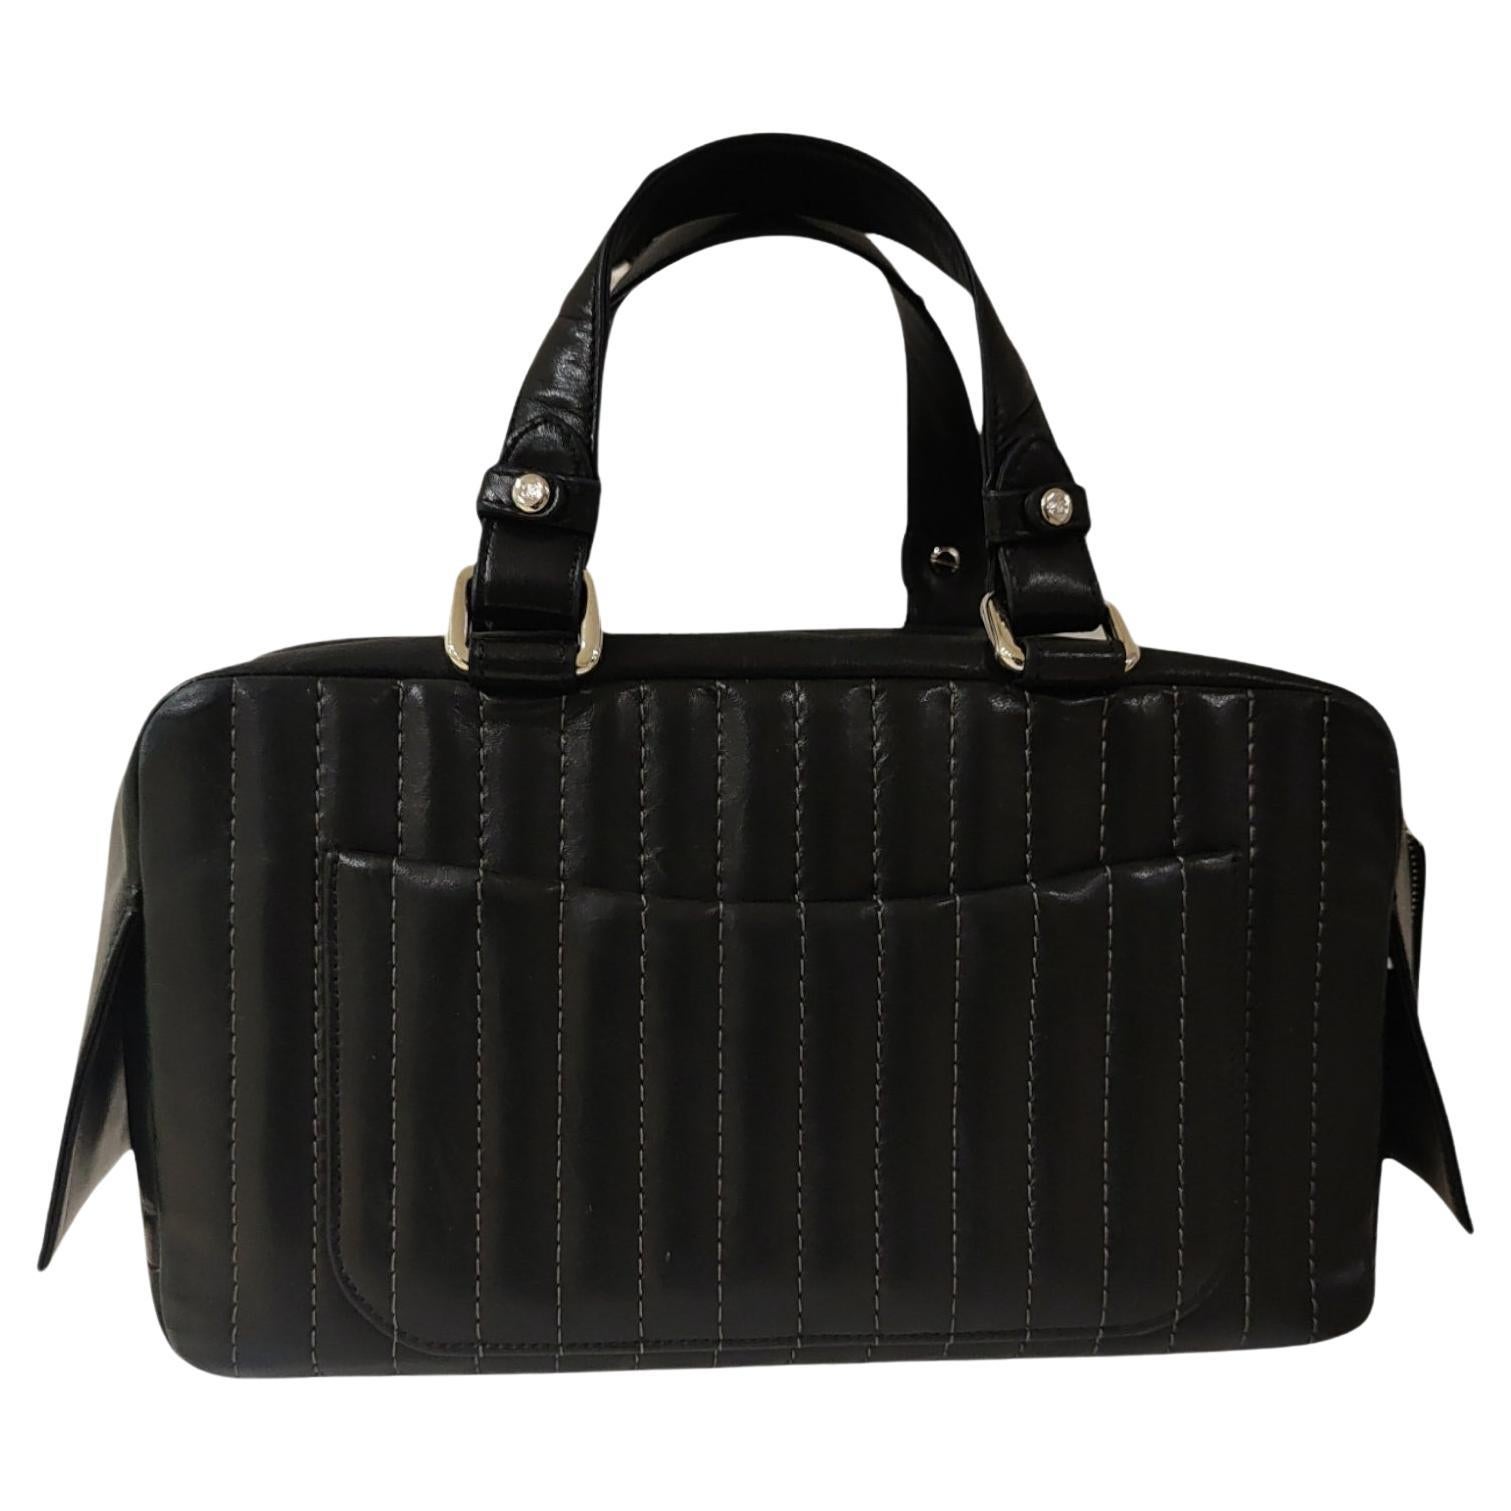 Chanel black leather vertical shoulder handle bag